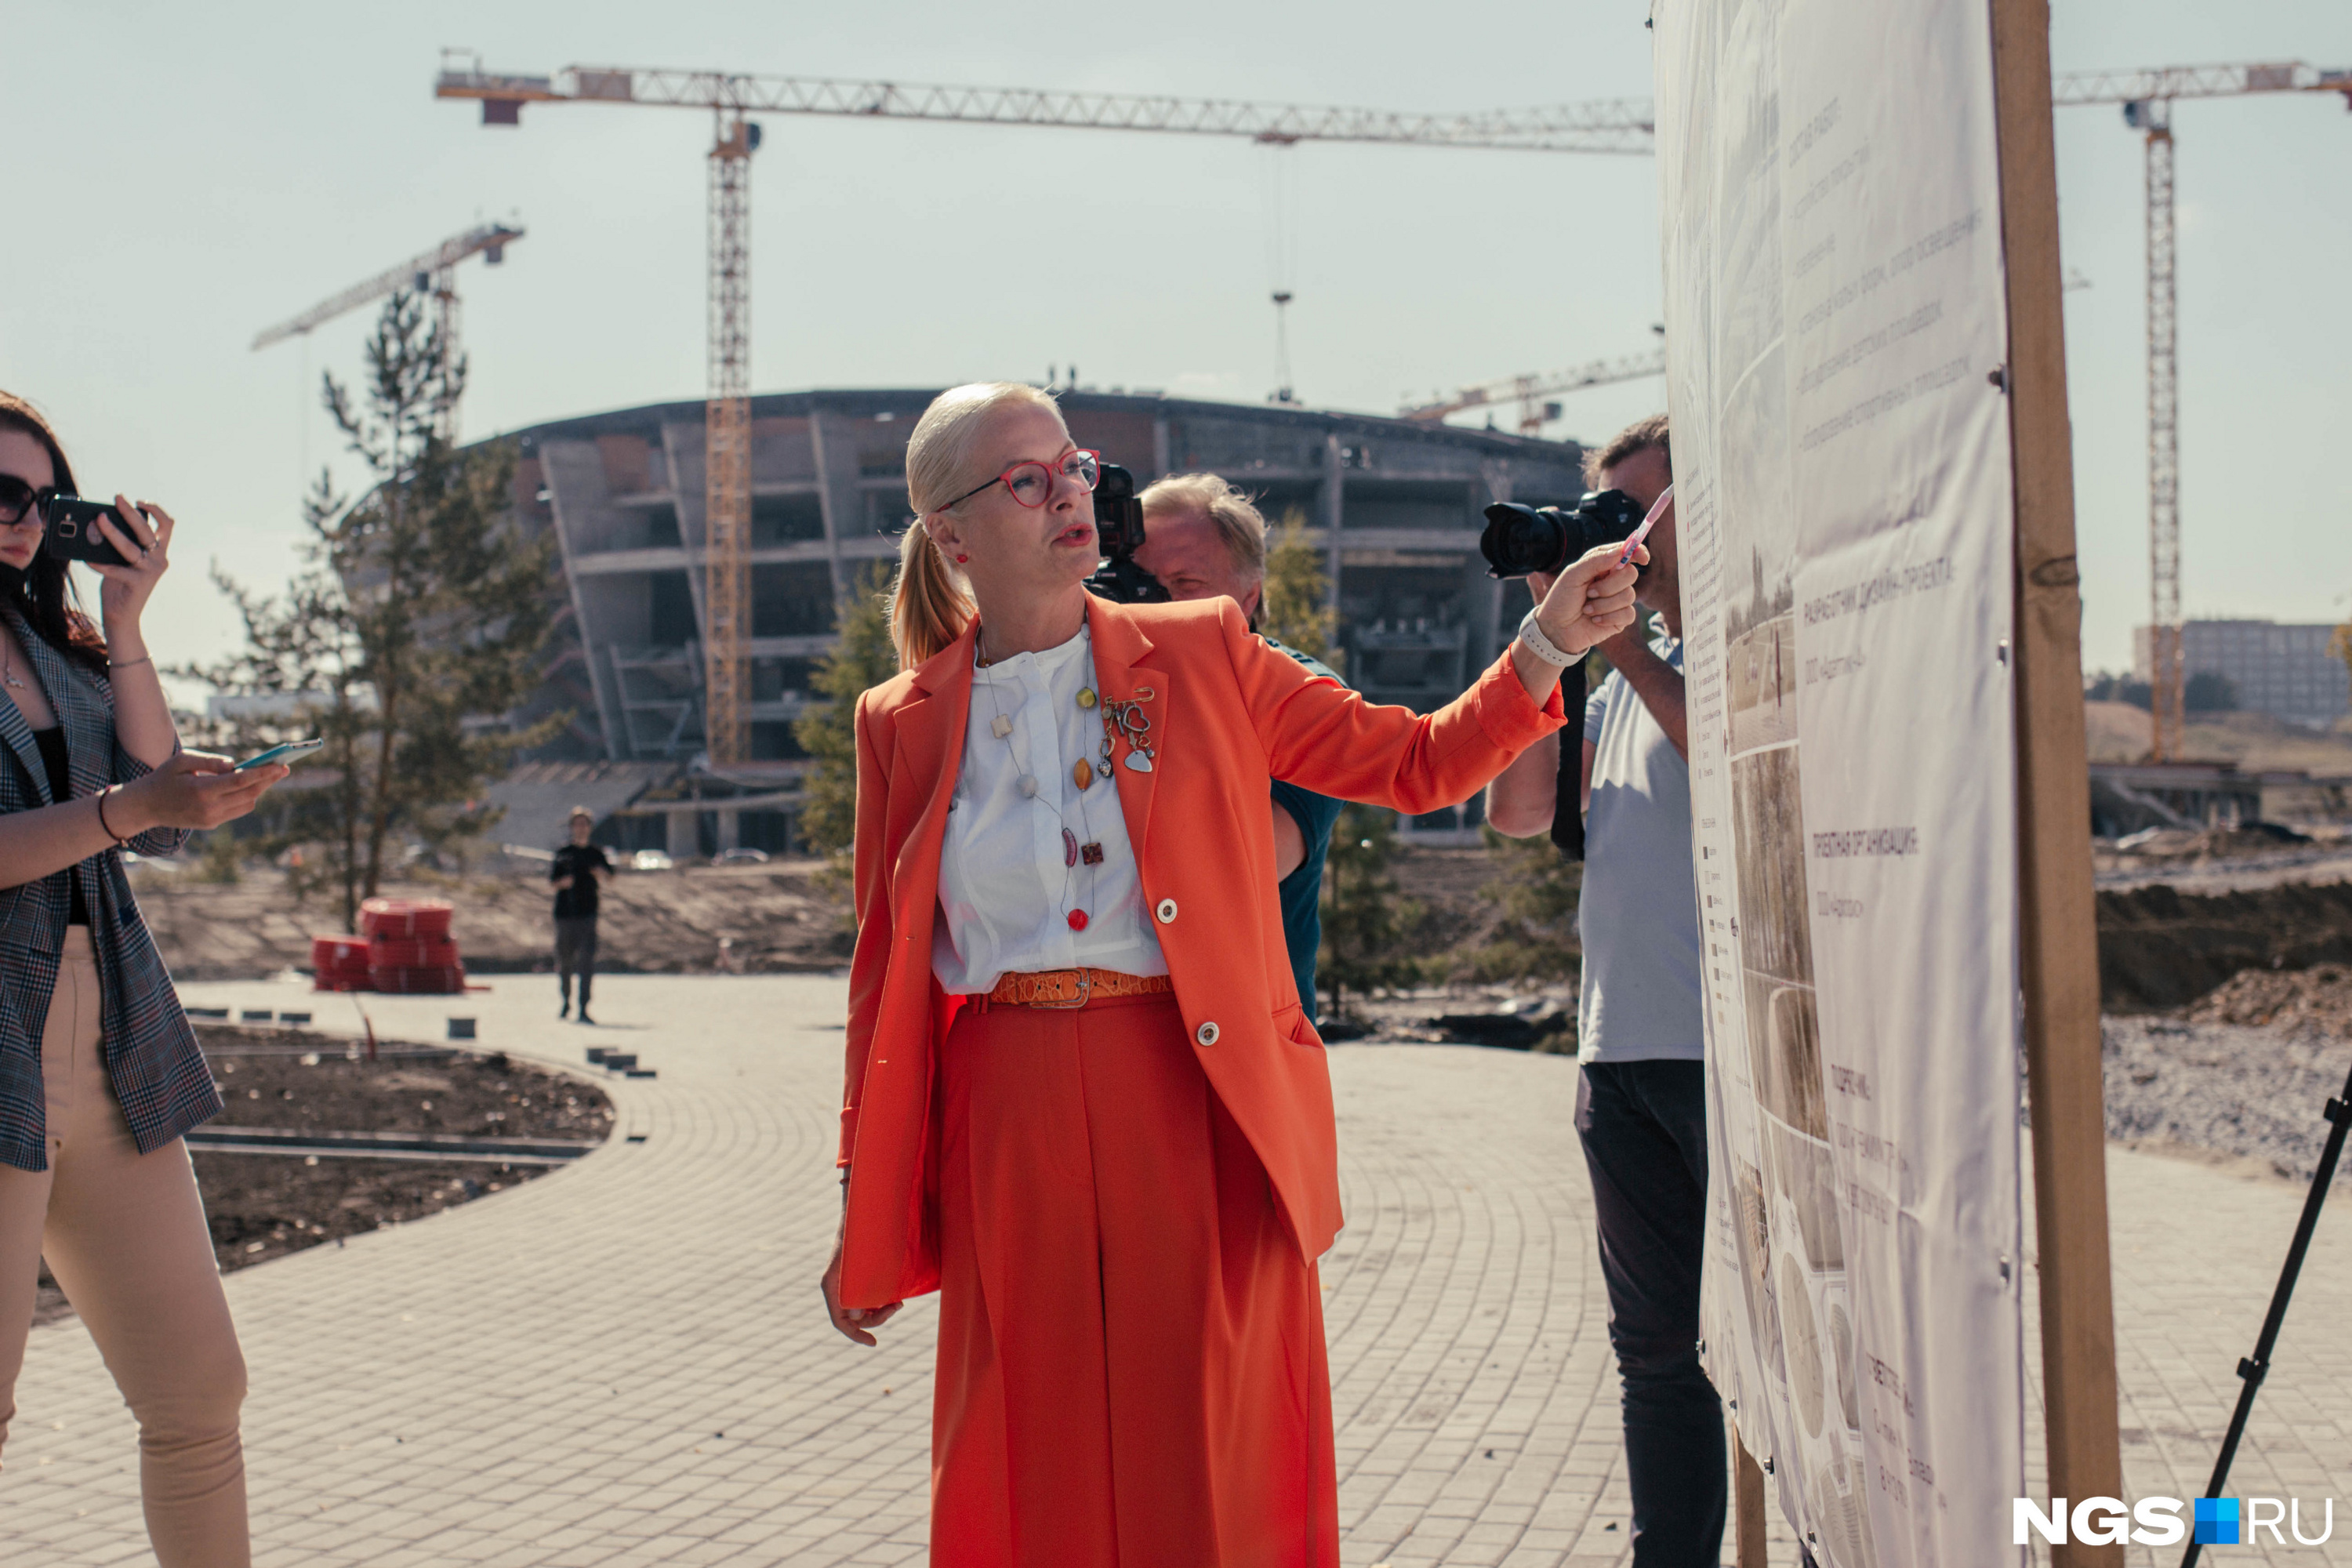 В этом костюме Анна Терешкова представляла проект благоустройства парка рядом с новой ледовой ареной